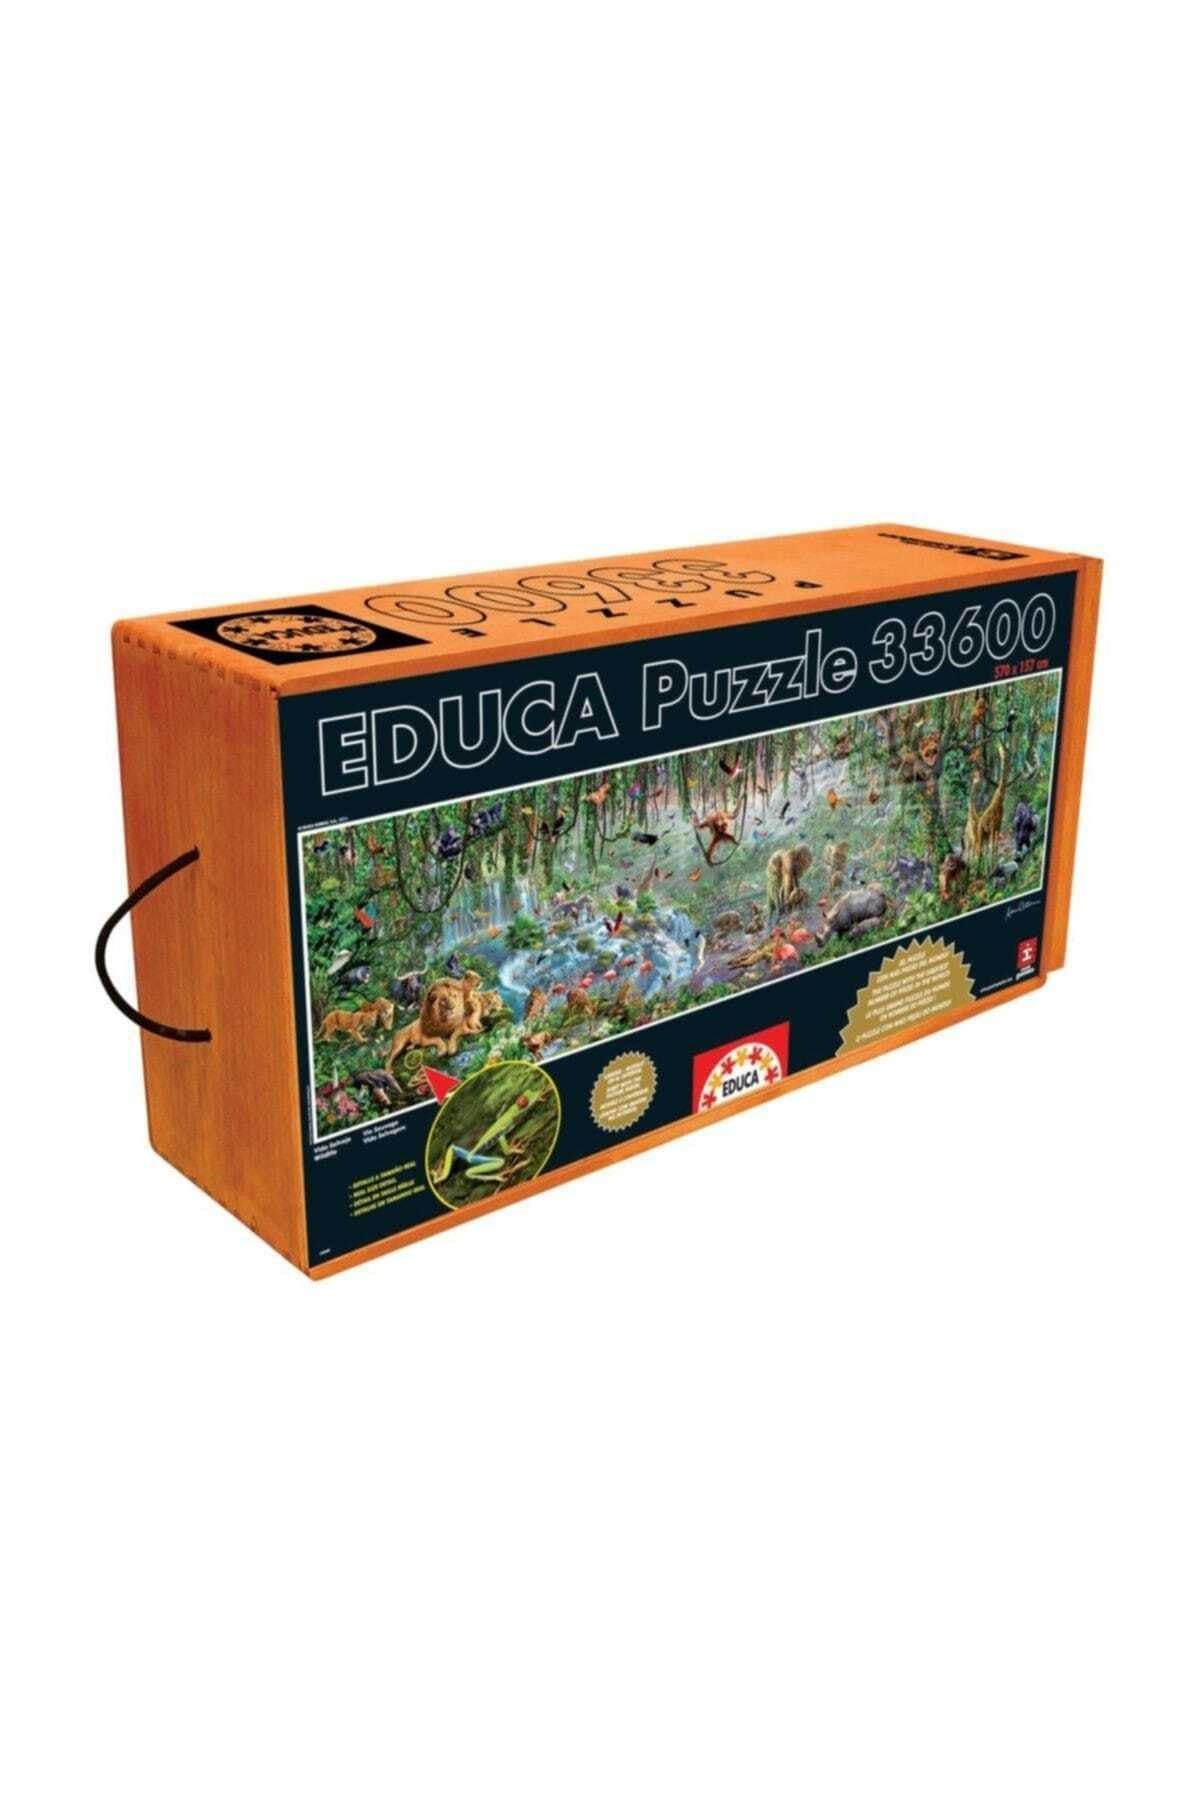 EDUCA Wild Life 33600 Parça Puzzle /